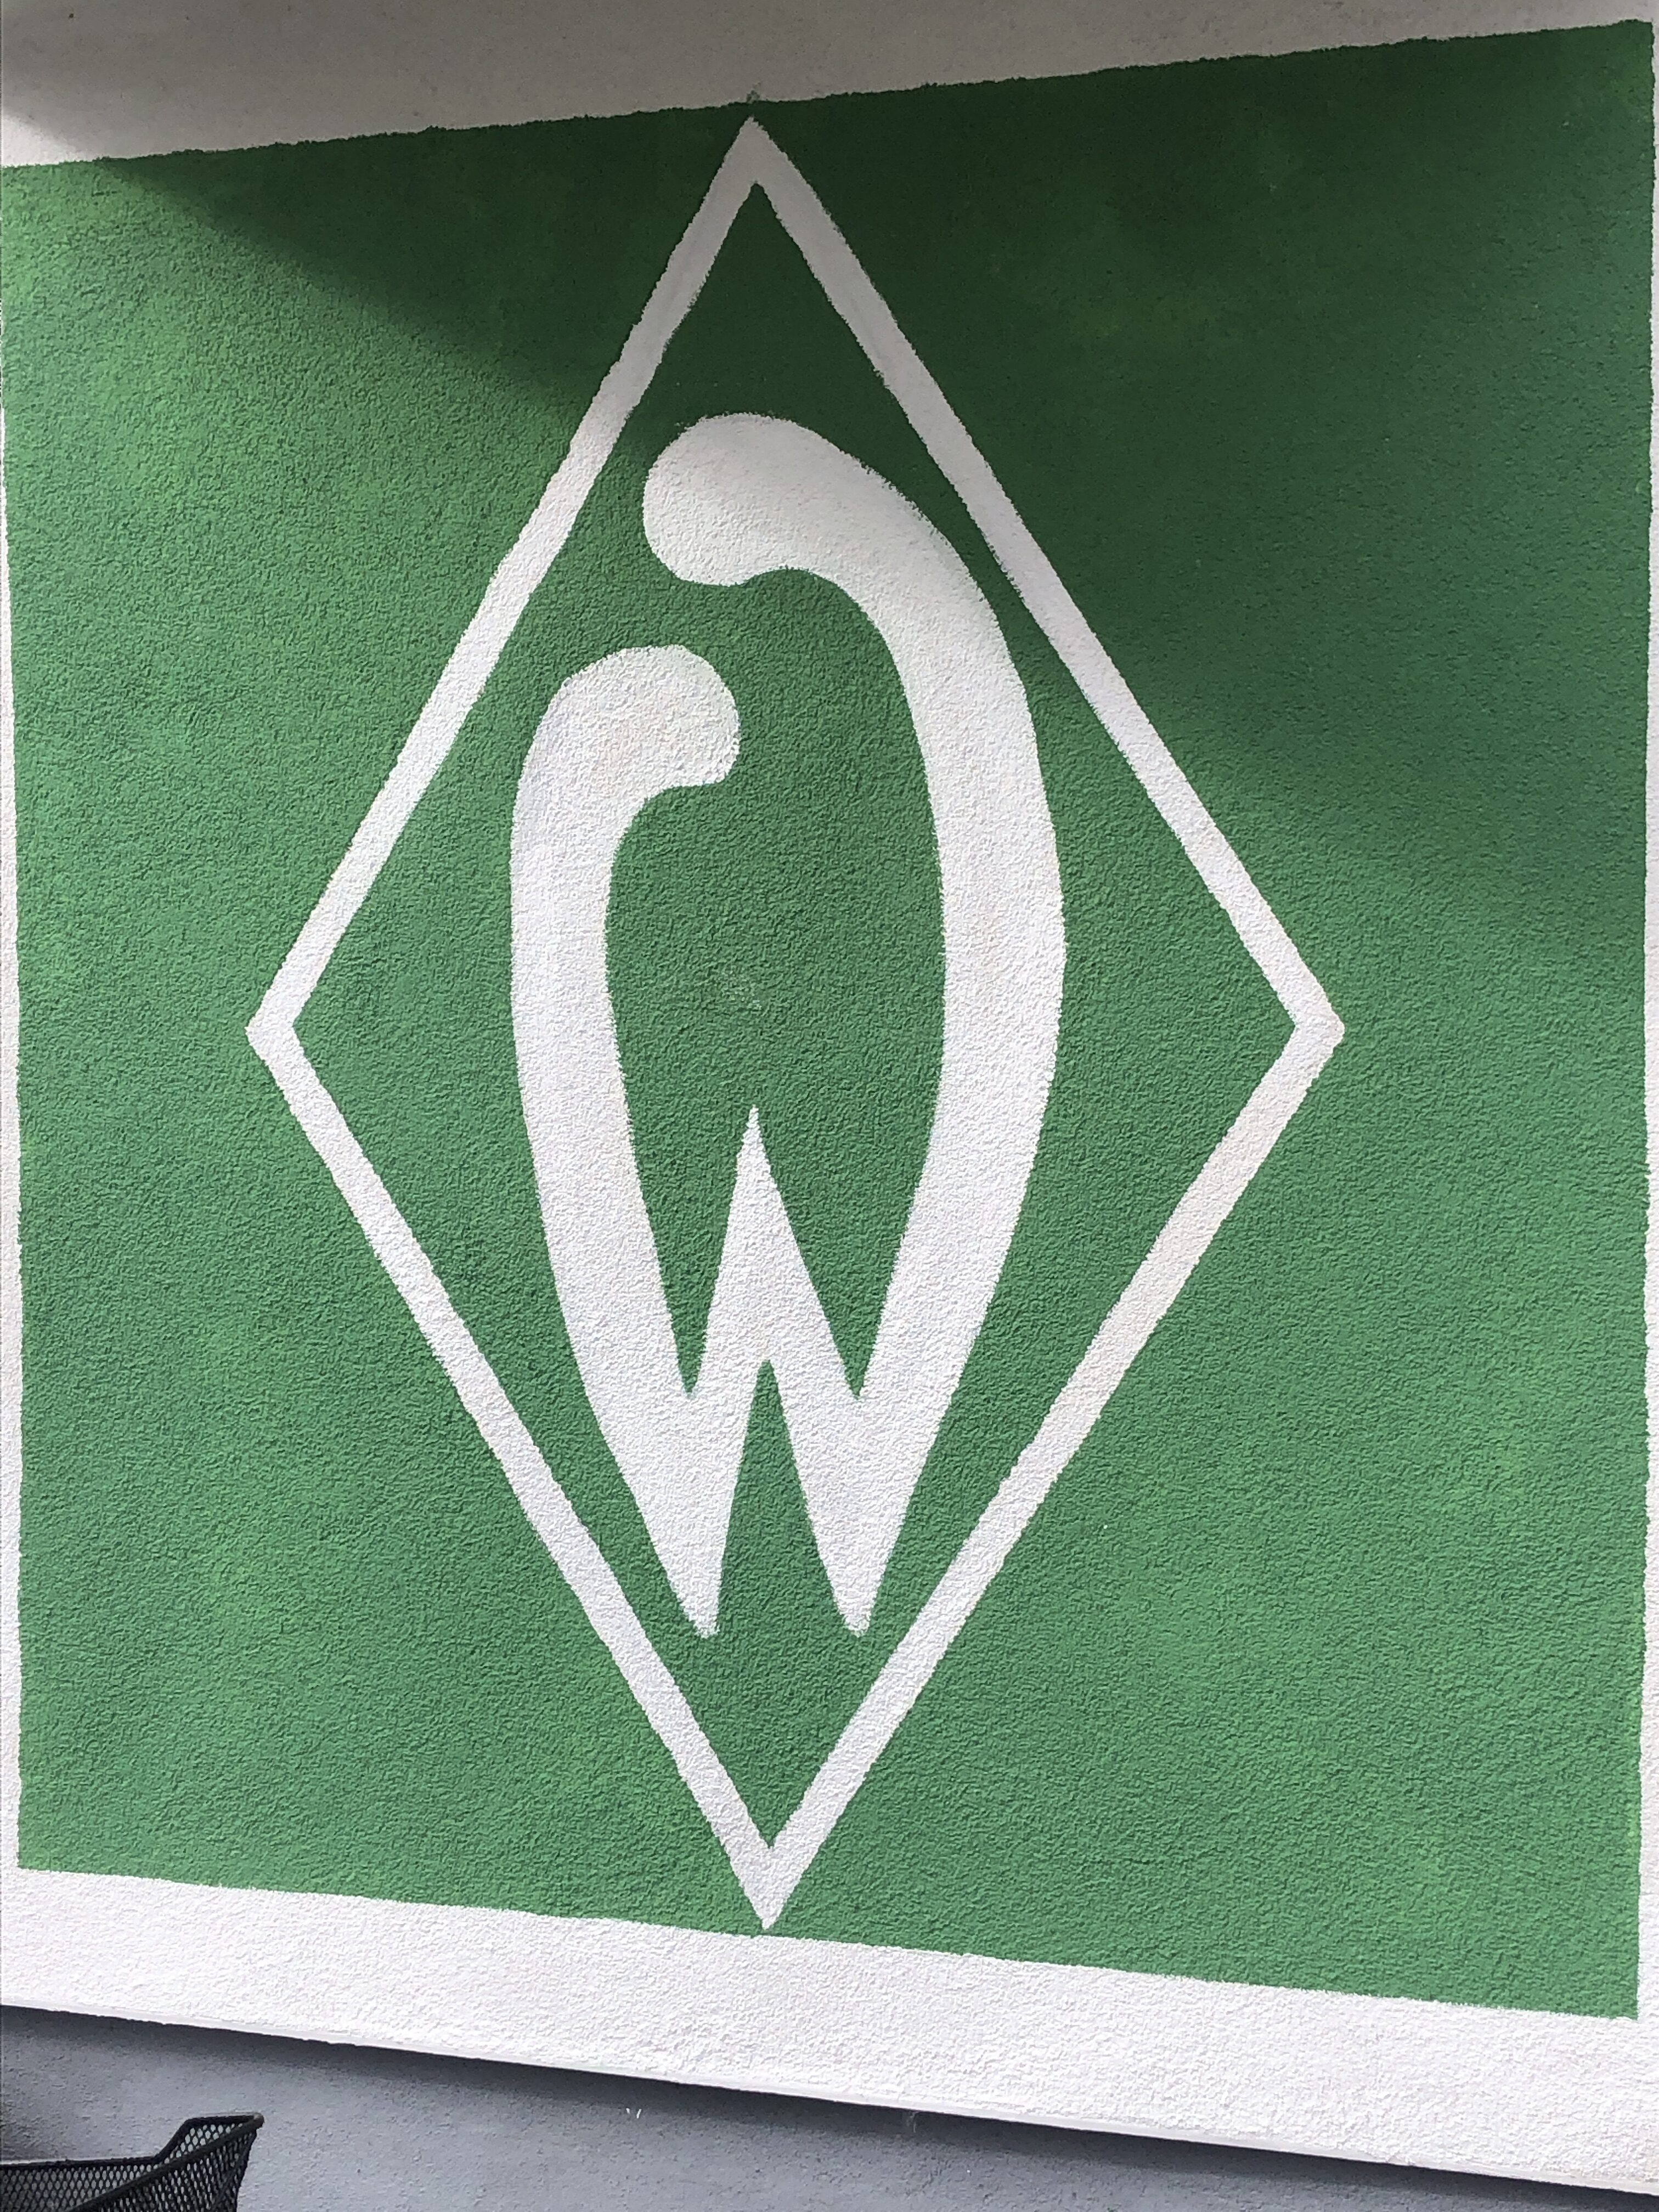 Werder Bremen, Jens Stage